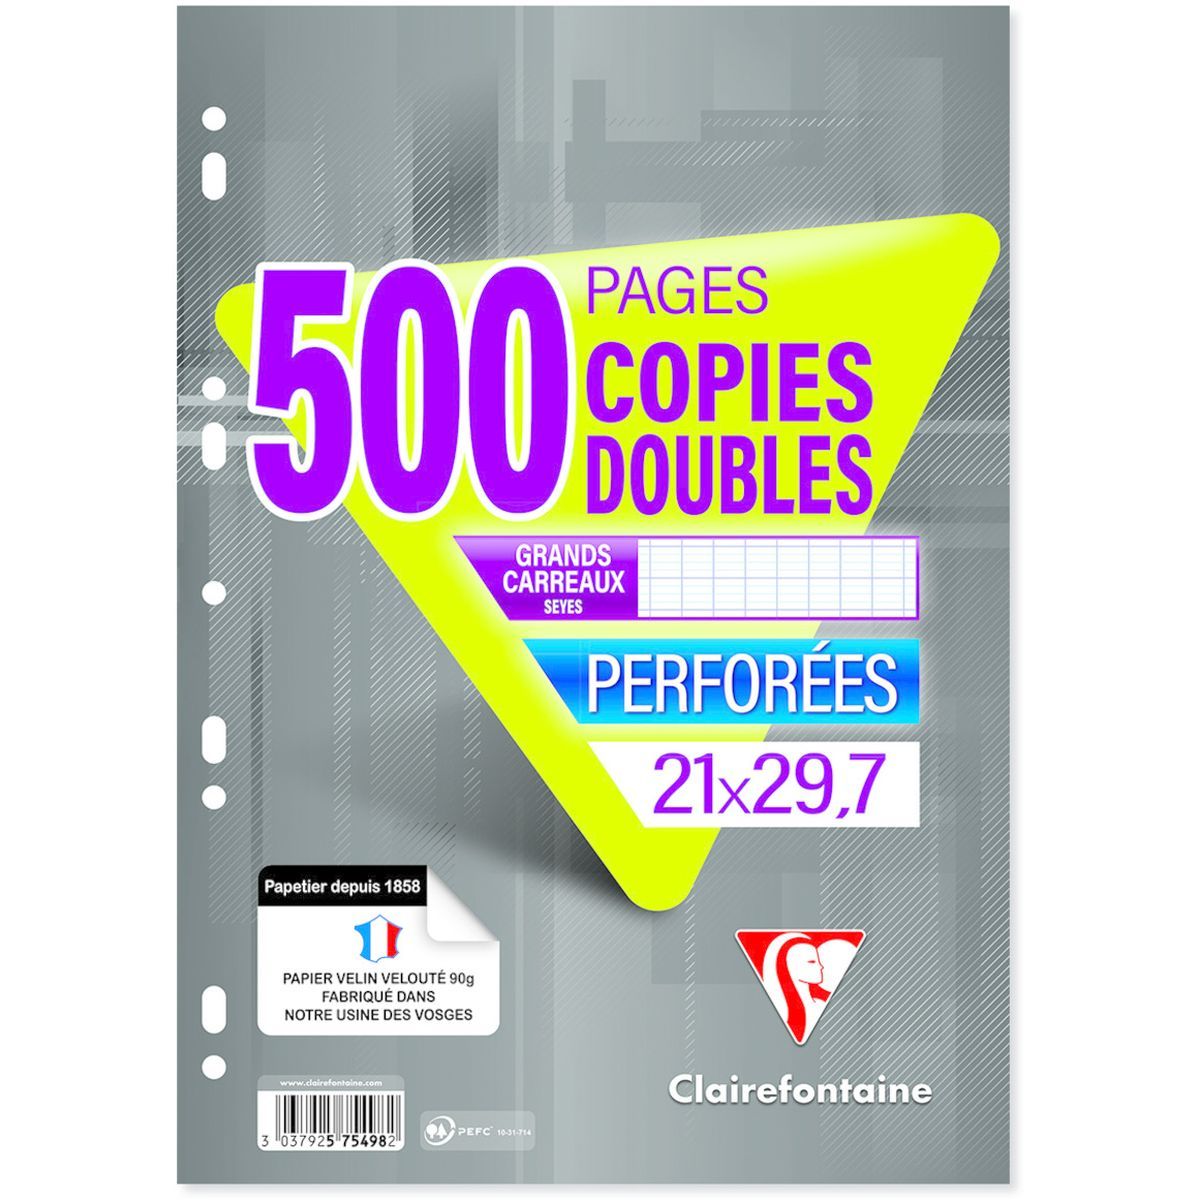 CLAIREFONTAINE Copies doubles 500 pages 21x29,7cm grands carreaux